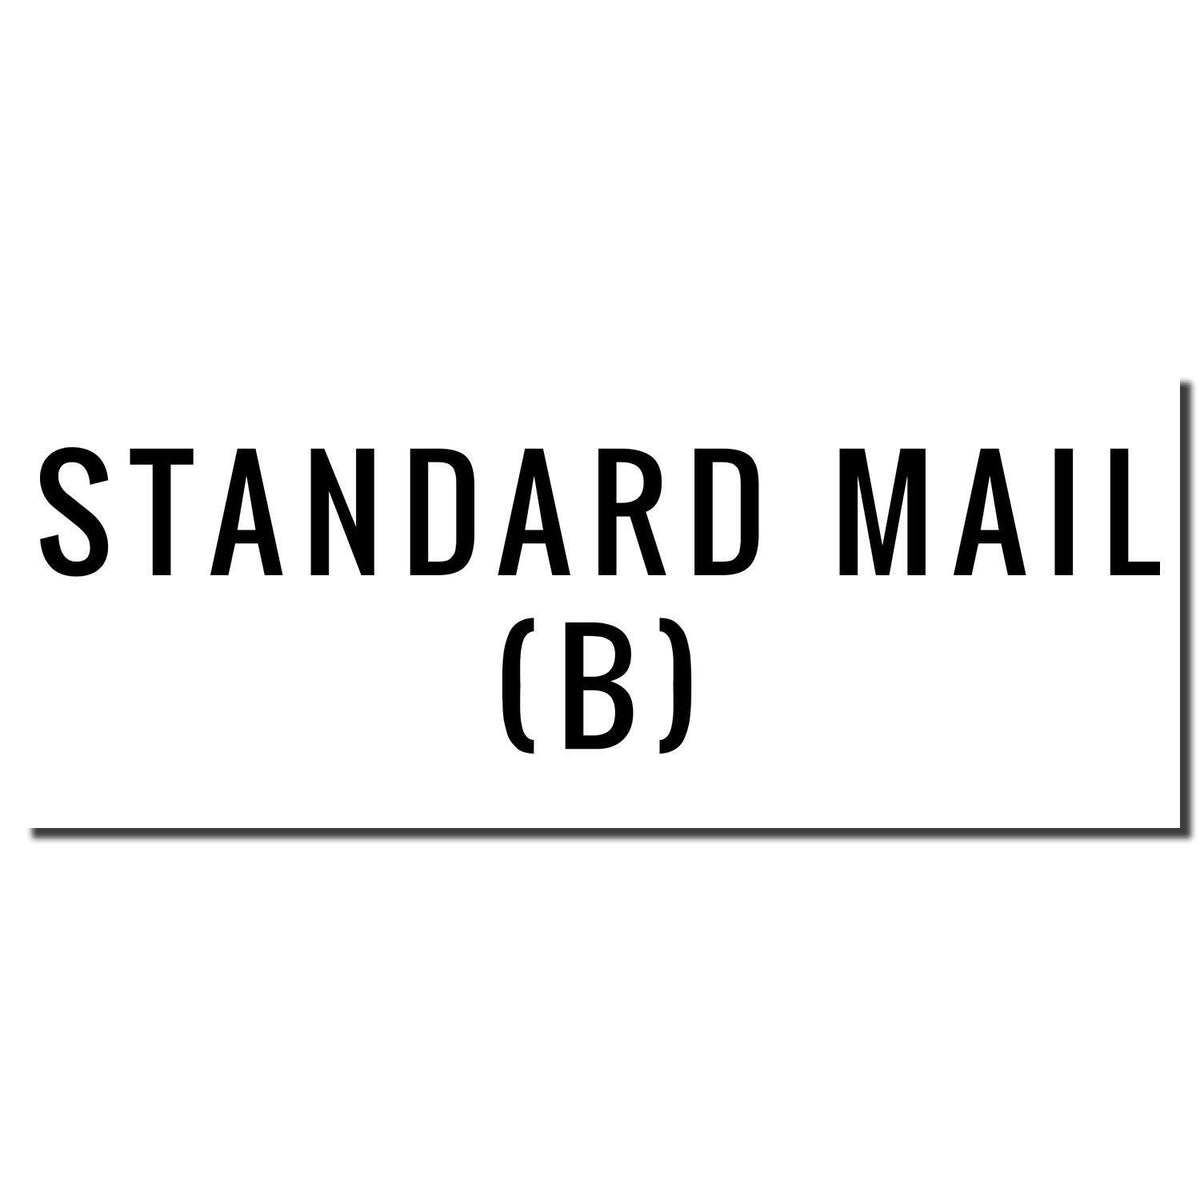 Enlarged Imprint Large Pre-Inked Standard Mail B Stamp Sample